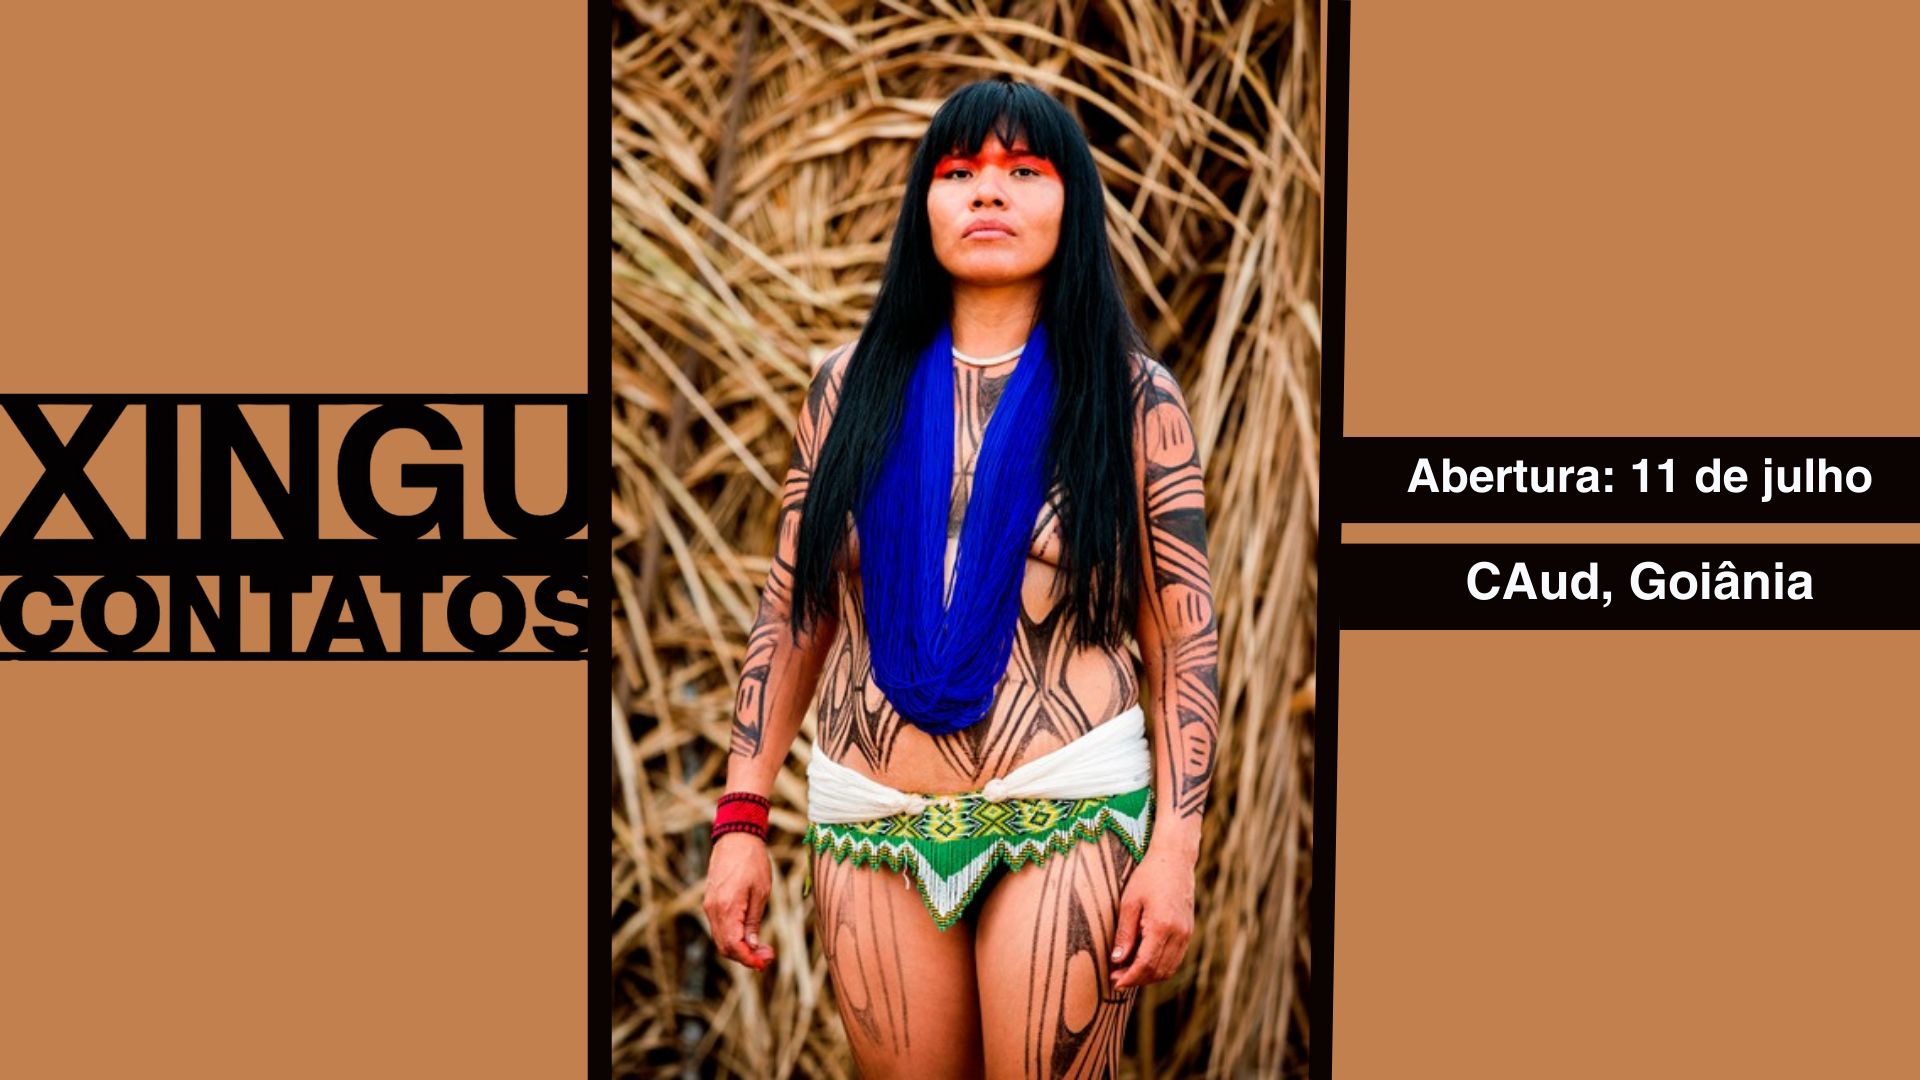 Centro Audiovisual (CAud) é inaugurado com a exposição "Xingu: contatos"